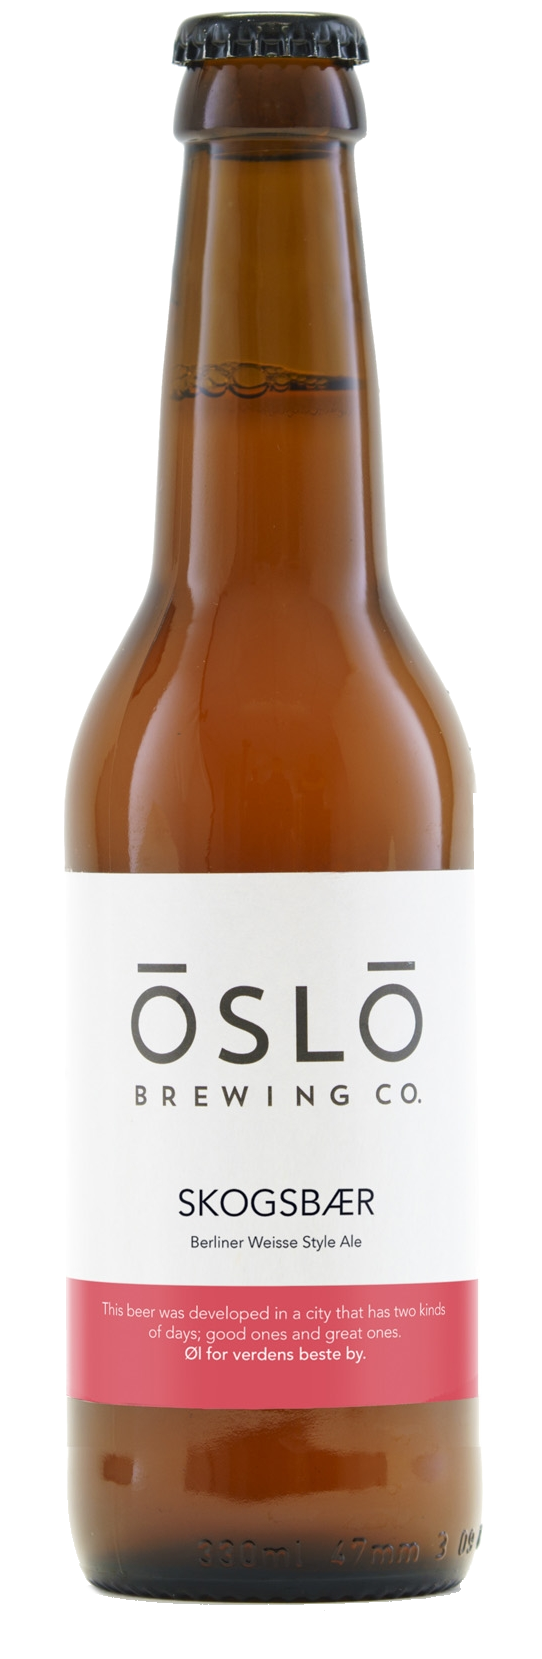 Produktbild von Oslo Brewing Company Skogsbaer